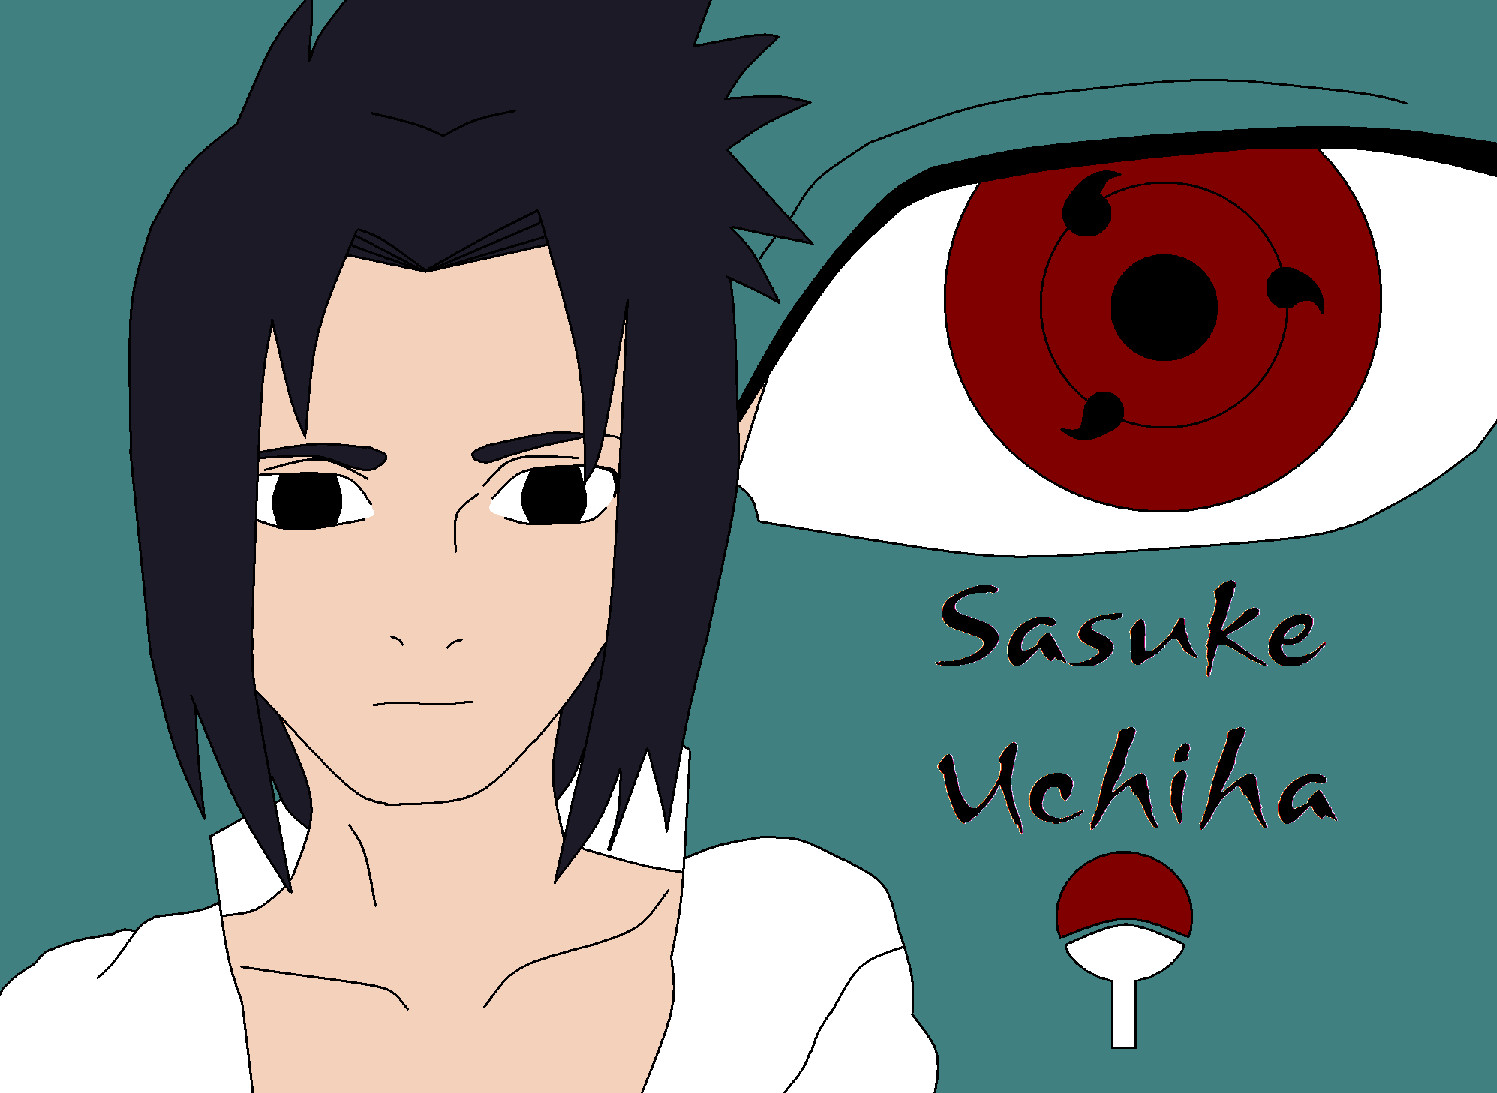 Sasuke Uchiha by angel24